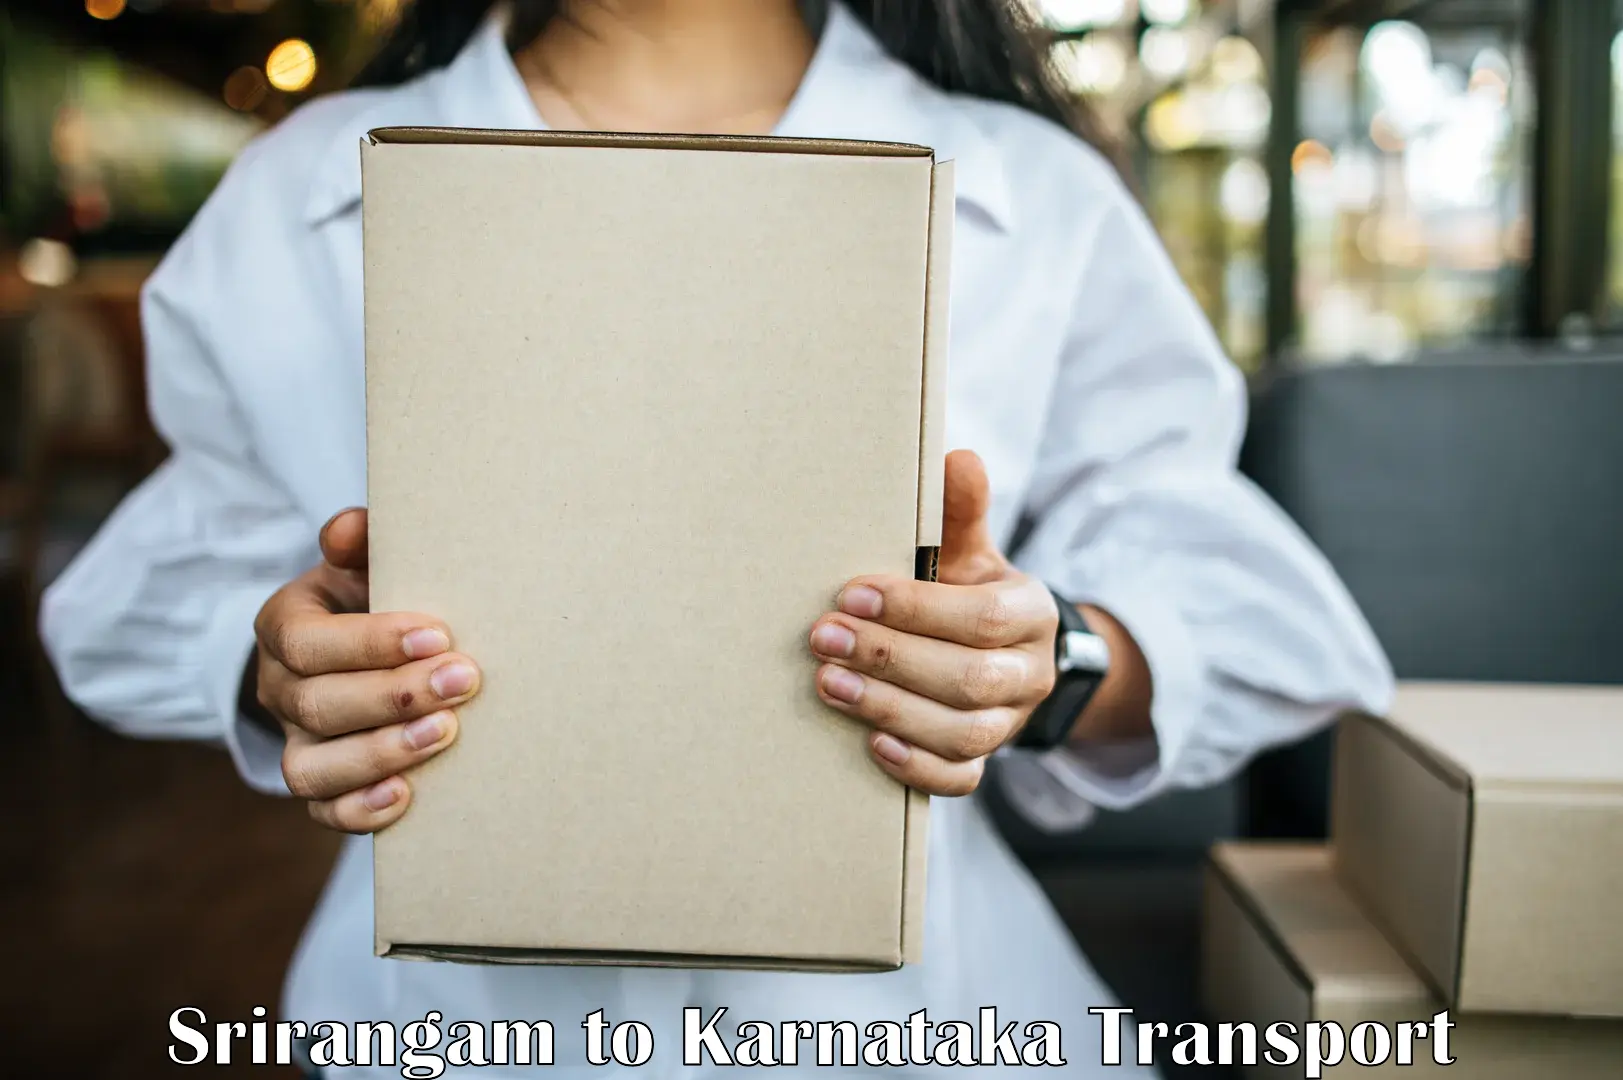 Transport in sharing Srirangam to Karnataka